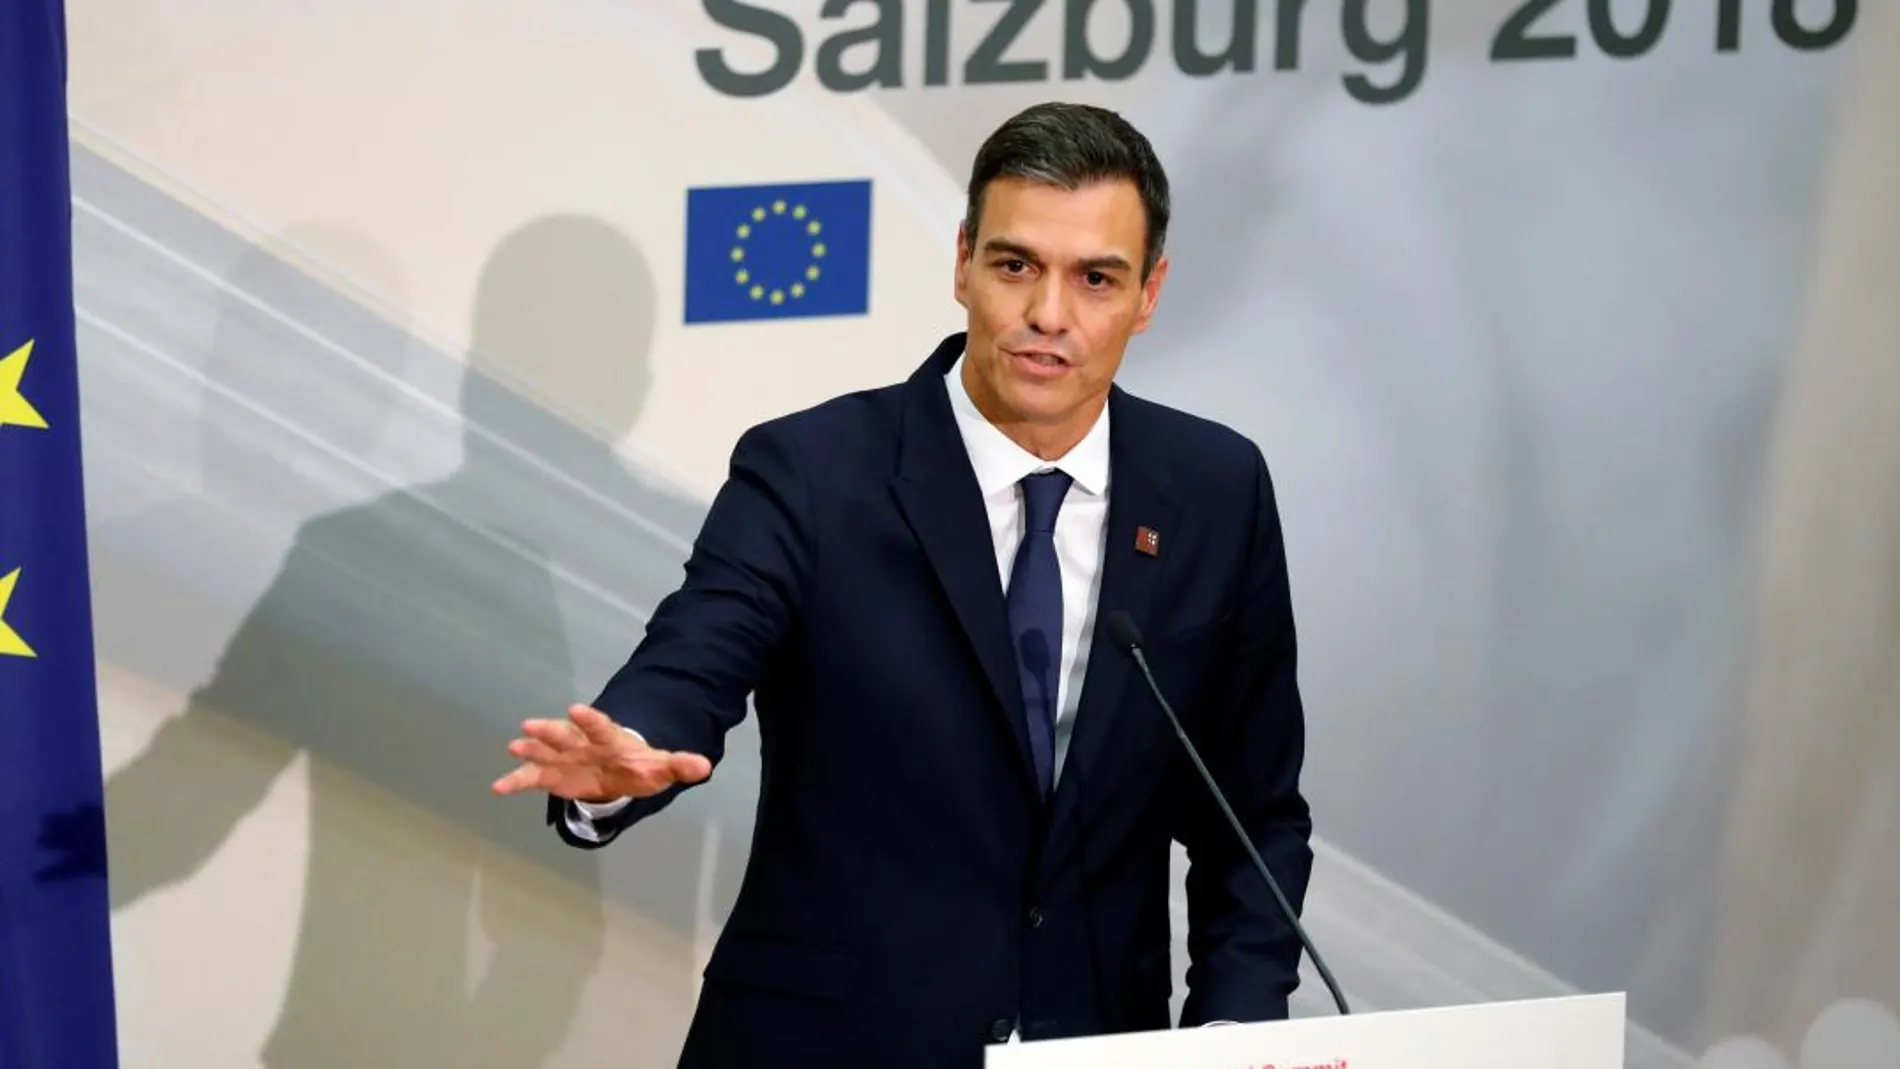 El presidente del Gobierno español, Pedro Sánchez, durante la rueda de prensa tras la segunda jornada de la cumbre informal europea de Salzburgo/Foto: Efe